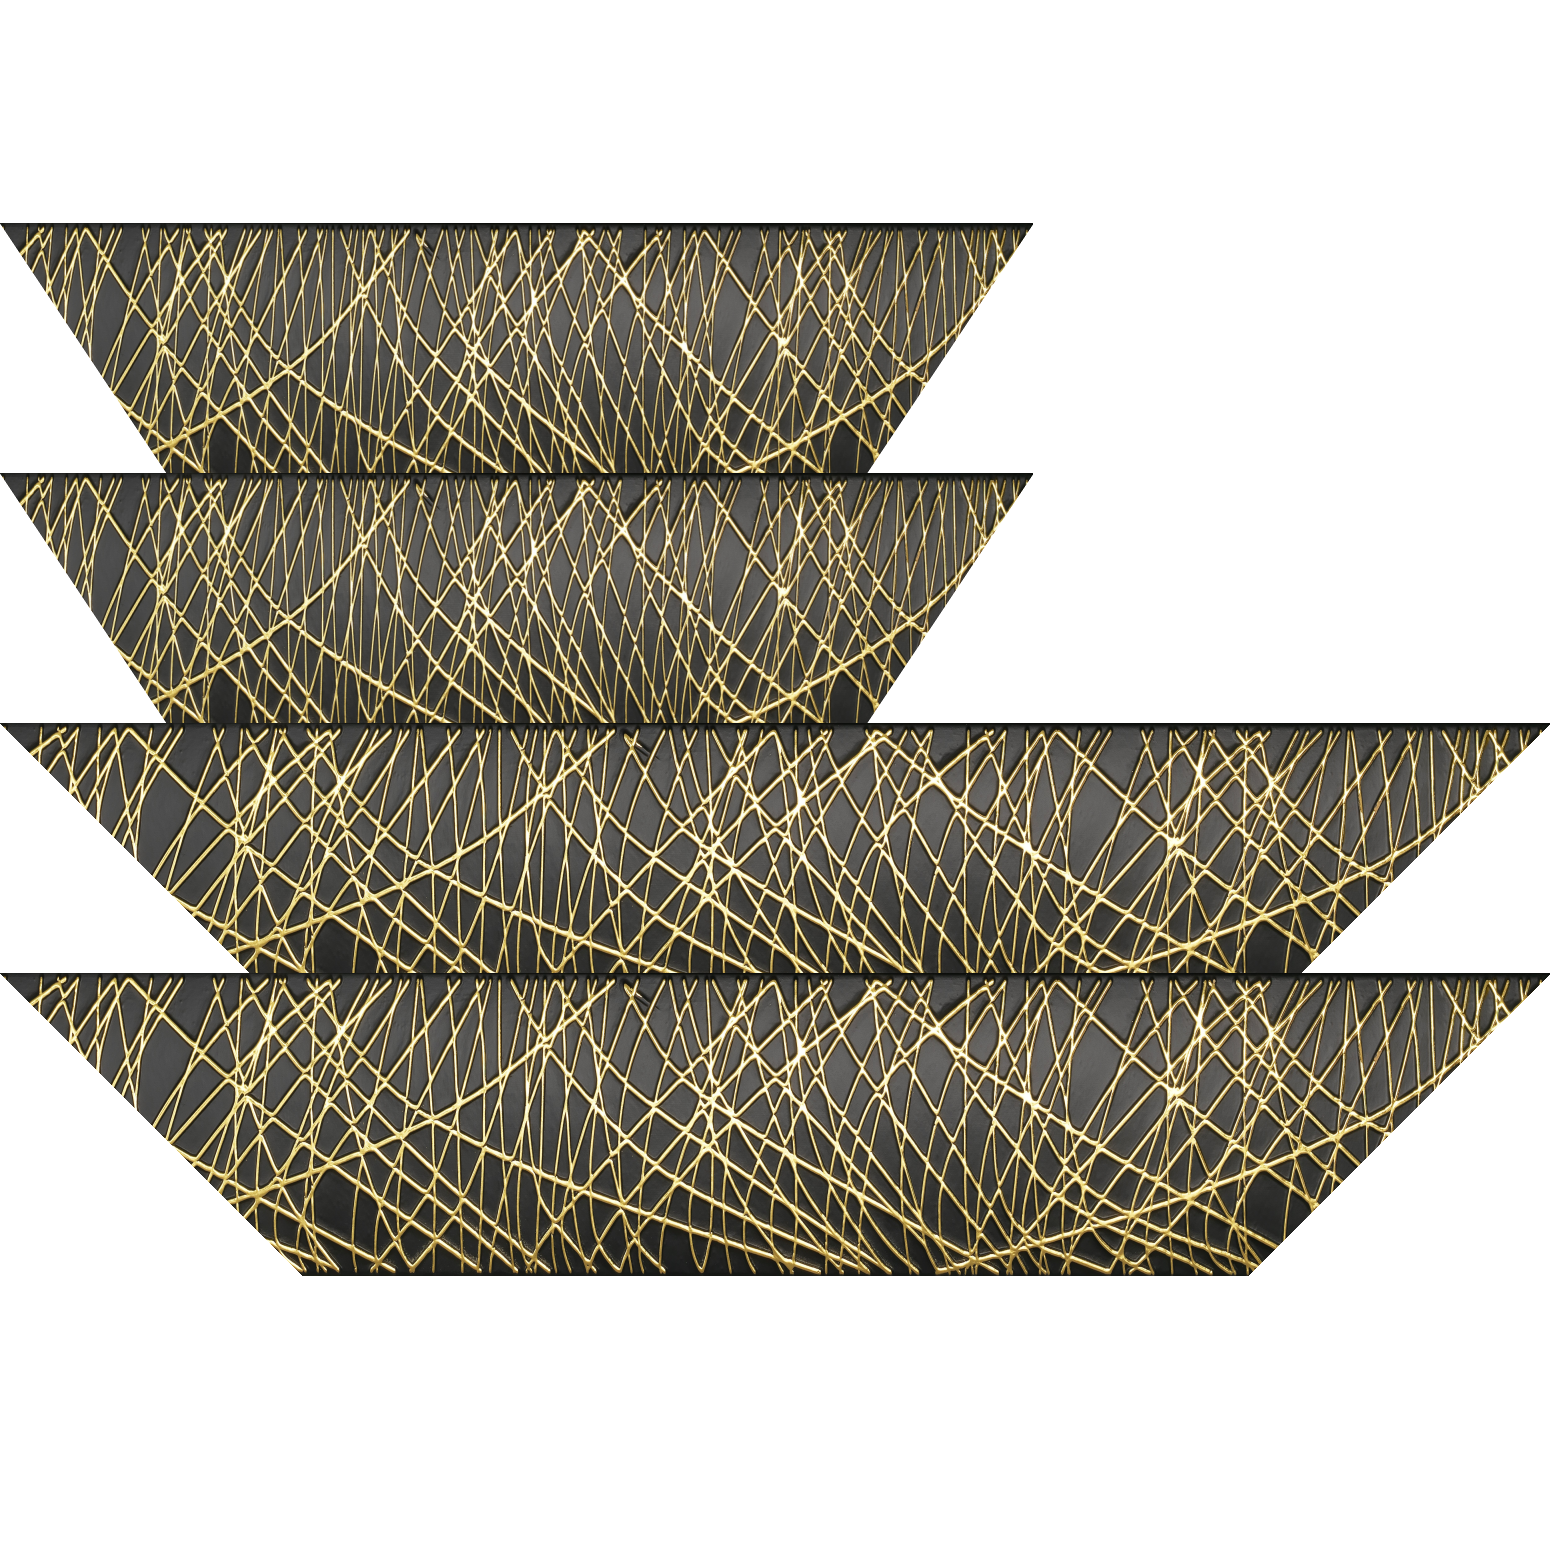 Baguette bois profil arrondi méplat largeur 9.9cm couleur noir satiné trait or en relief - 34x40